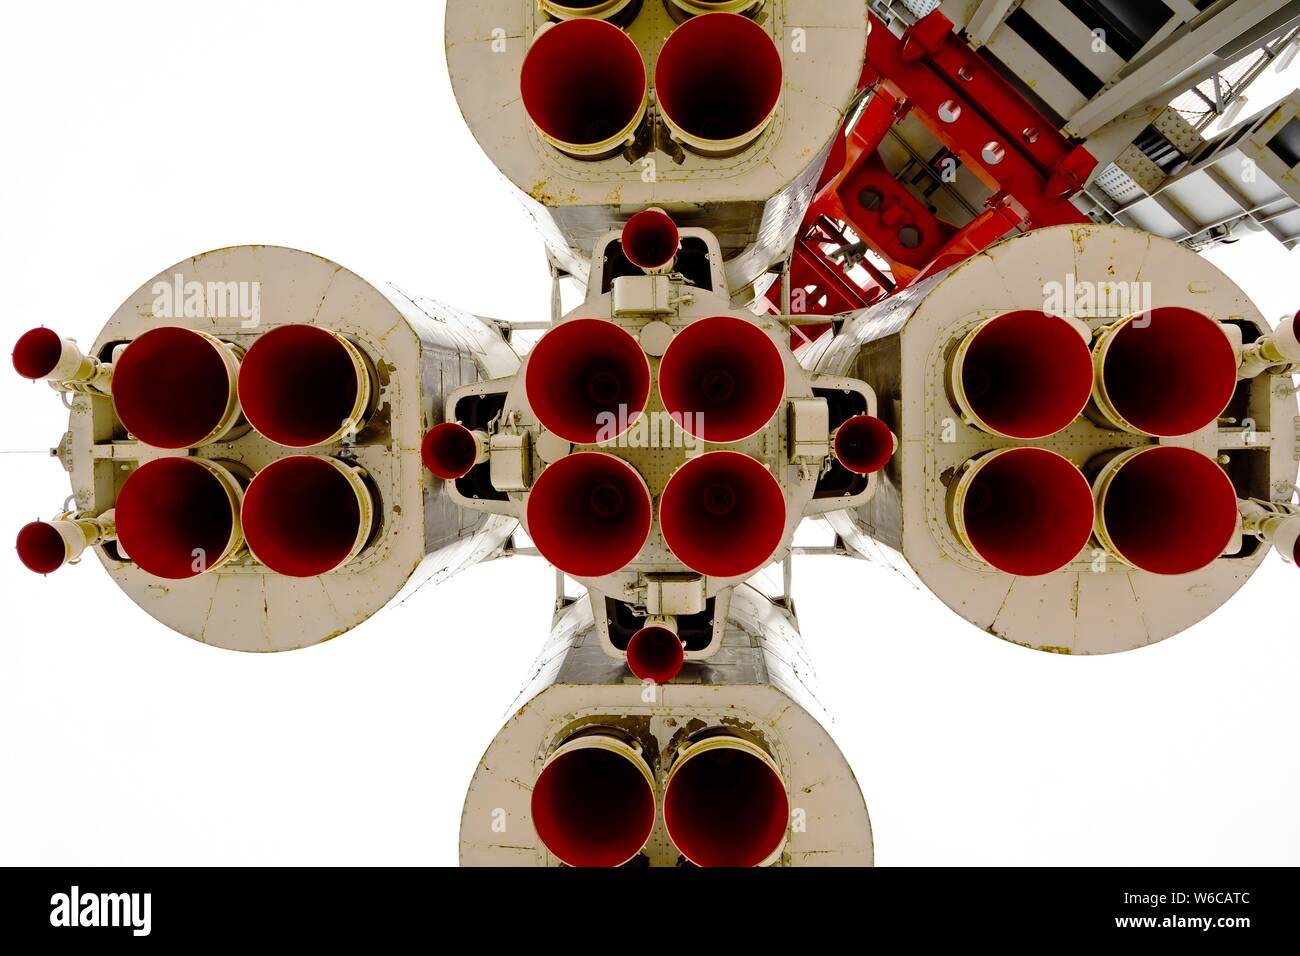 Buse de fusée à partir de l'espace, vue de dessous les moteurs de merde Banque D'Images